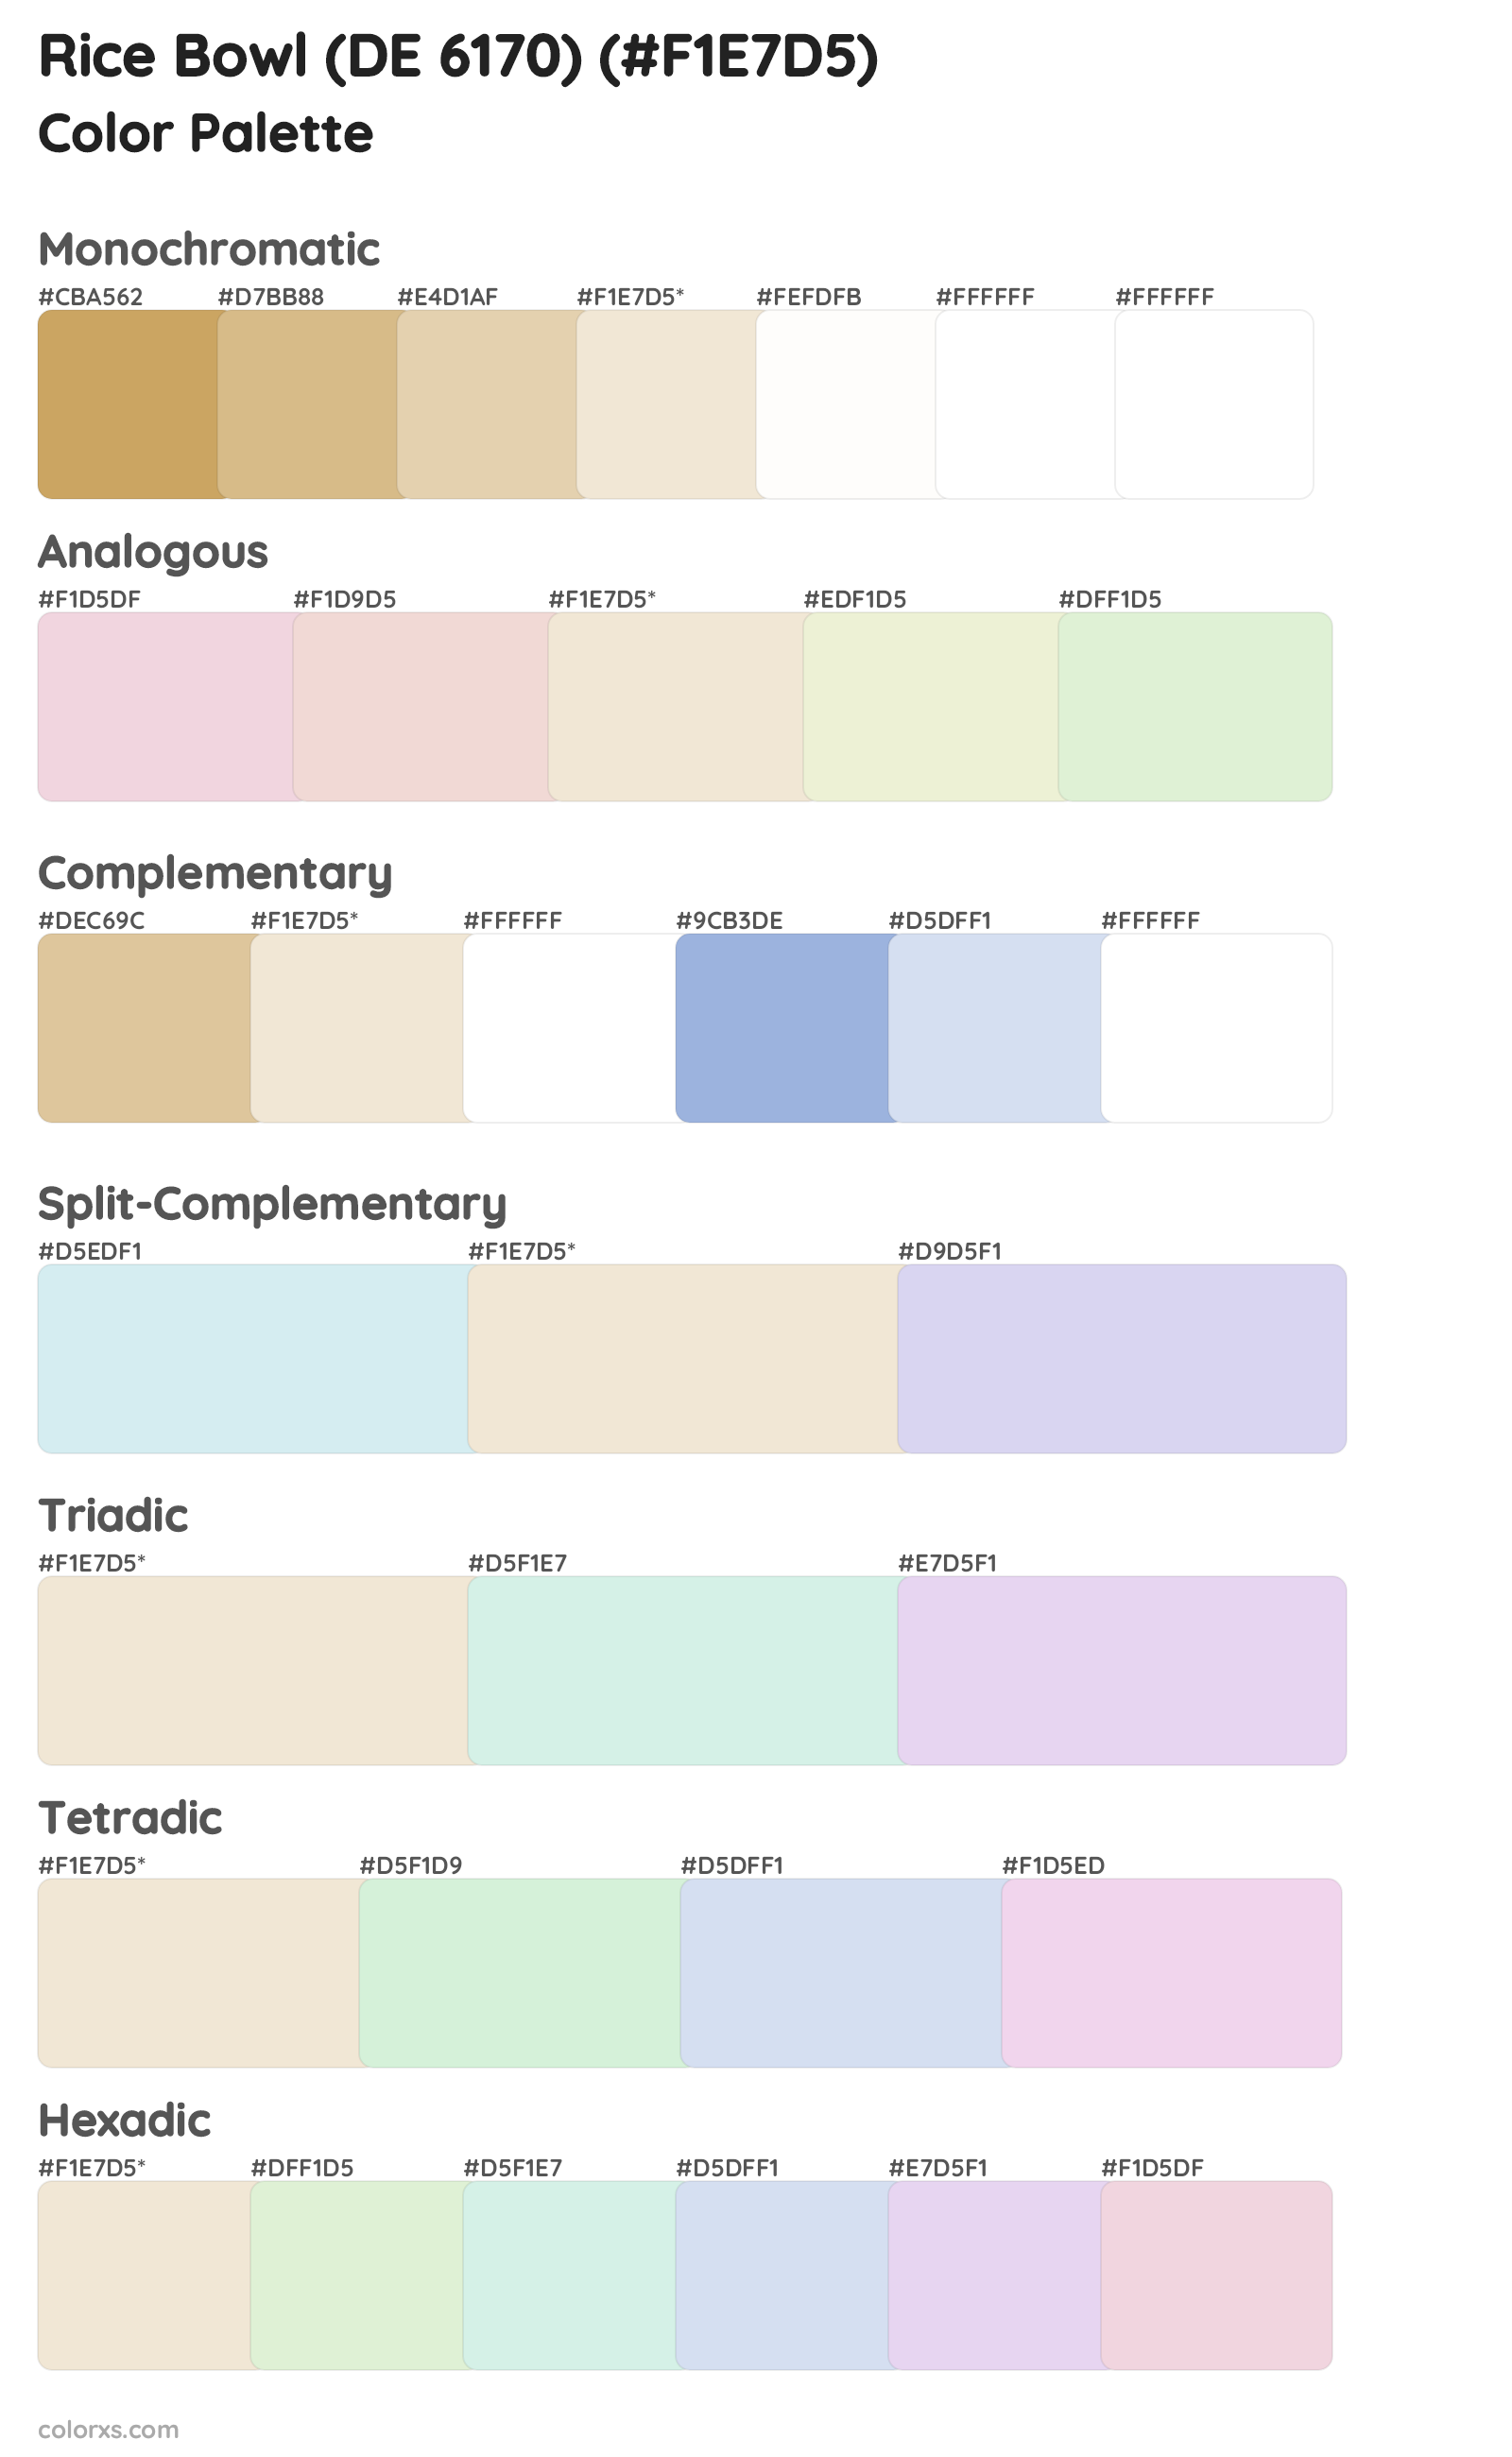 Rice Bowl (DE 6170) Color Scheme Palettes